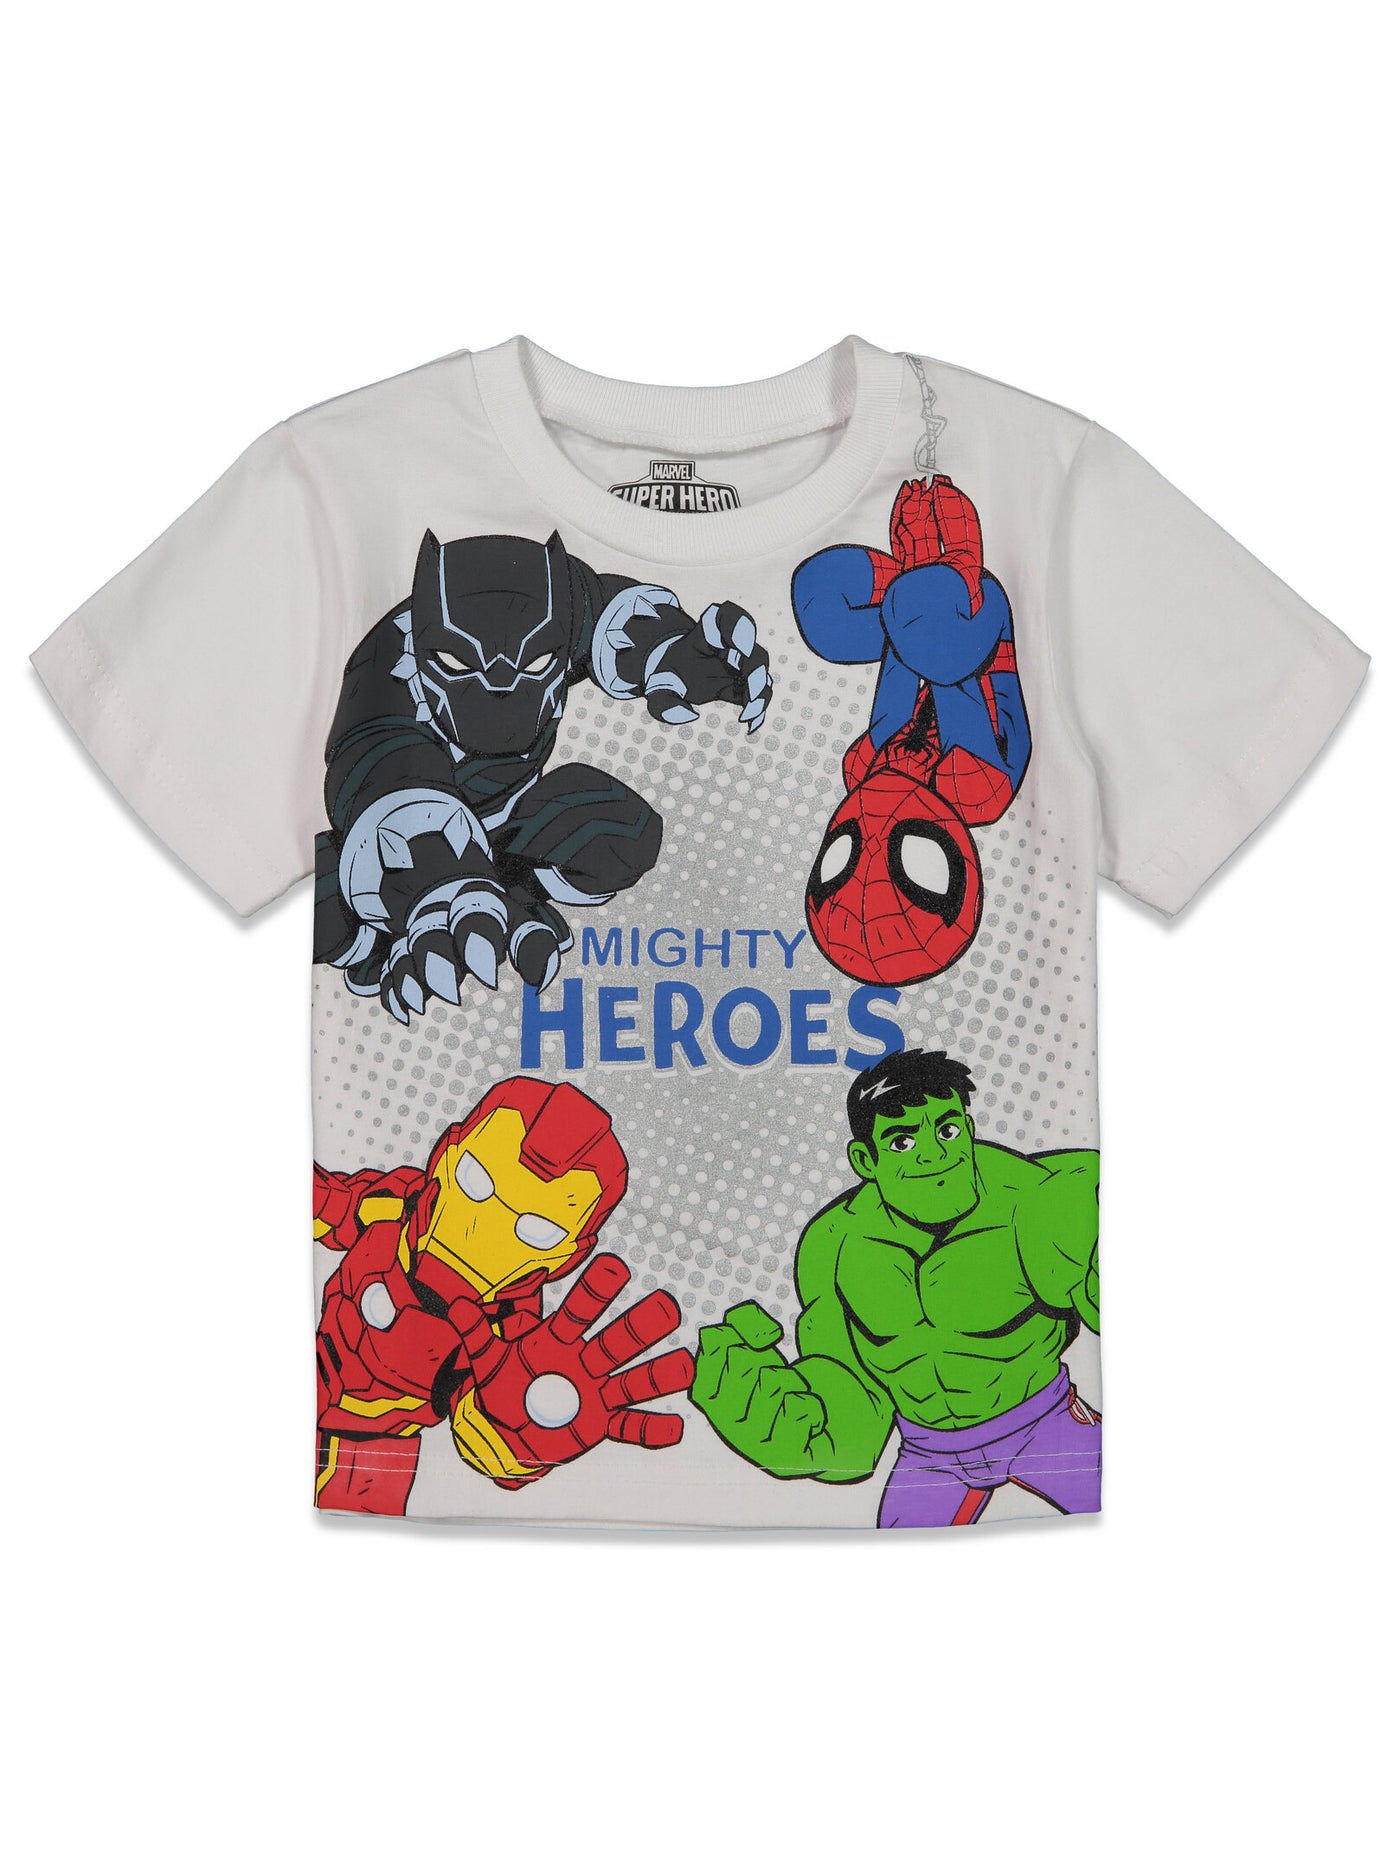 Marvel Avengers Spider-Man paquete de 4 camisetas gráficas